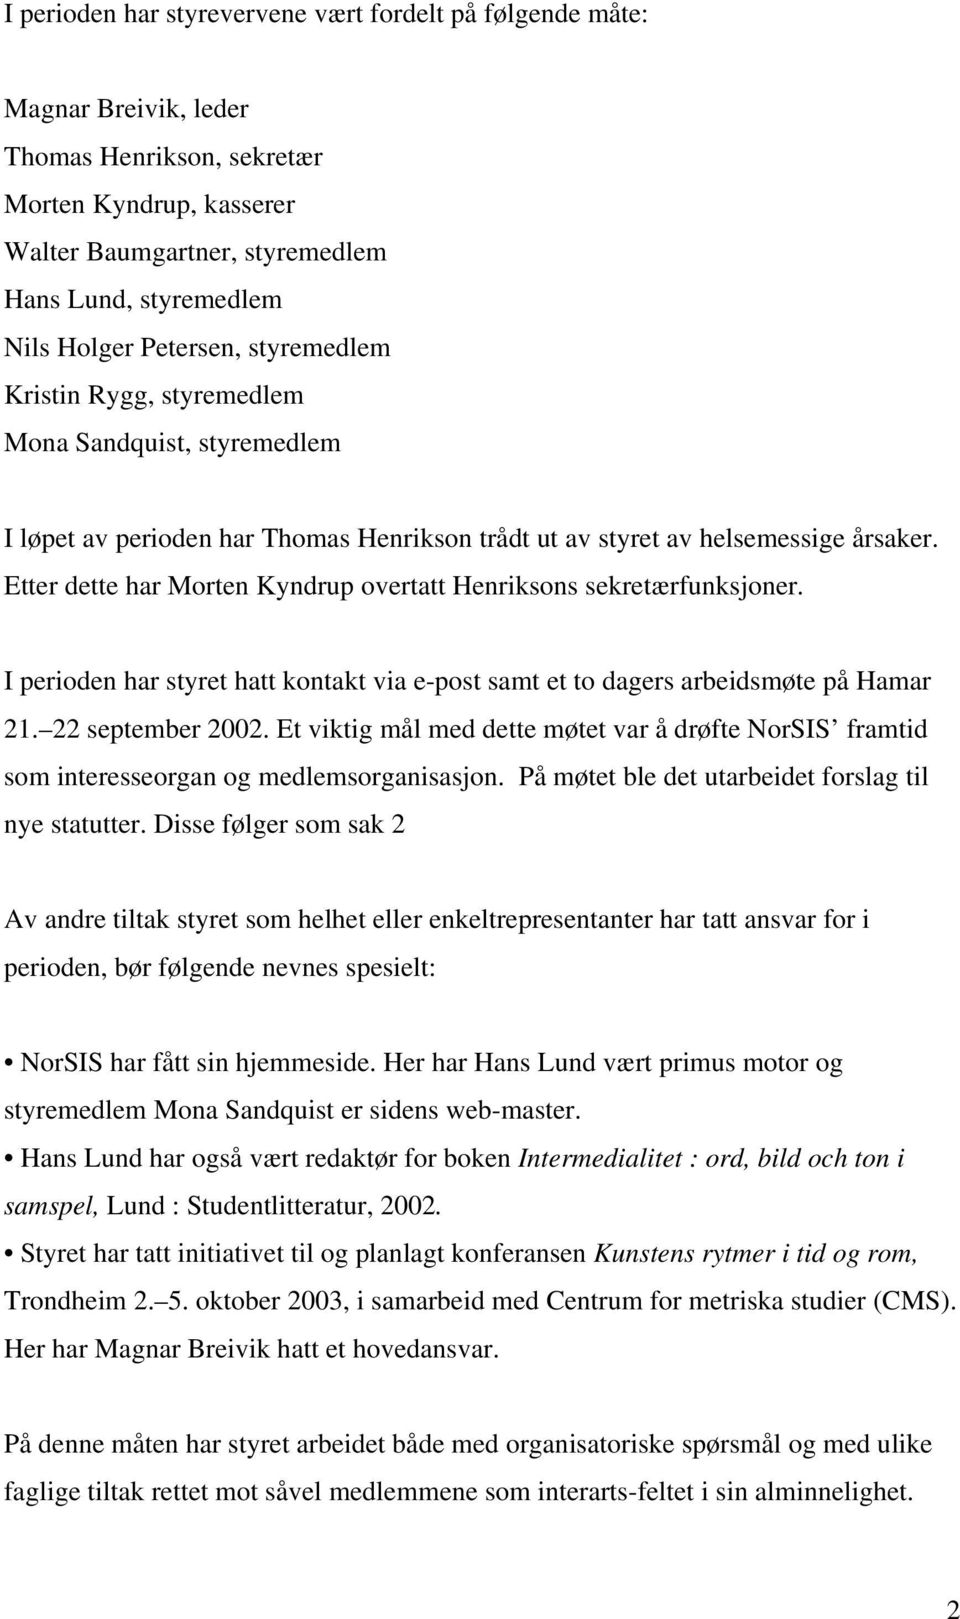 Etter dette har Morten Kyndrup overtatt Henriksons sekretærfunksjoner. I perioden har styret hatt kontakt via e-post samt et to dagers arbeidsmøte på Hamar 21. 22 september 2002.